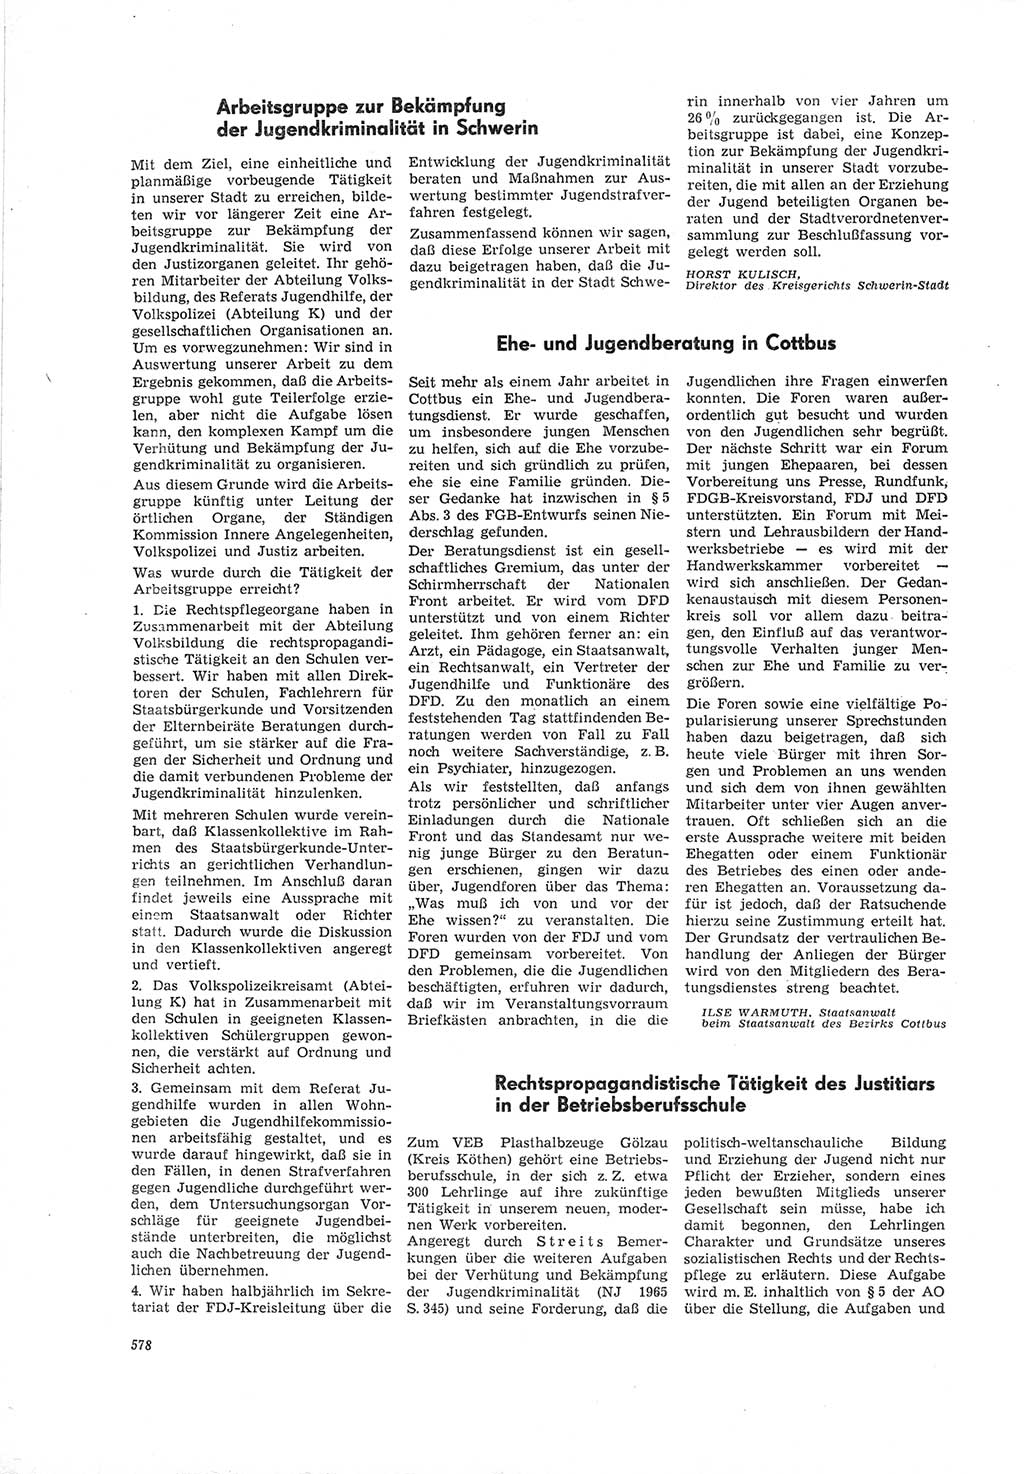 Neue Justiz (NJ), Zeitschrift für Recht und Rechtswissenschaft [Deutsche Demokratische Republik (DDR)], 19. Jahrgang 1965, Seite 578 (NJ DDR 1965, S. 578)